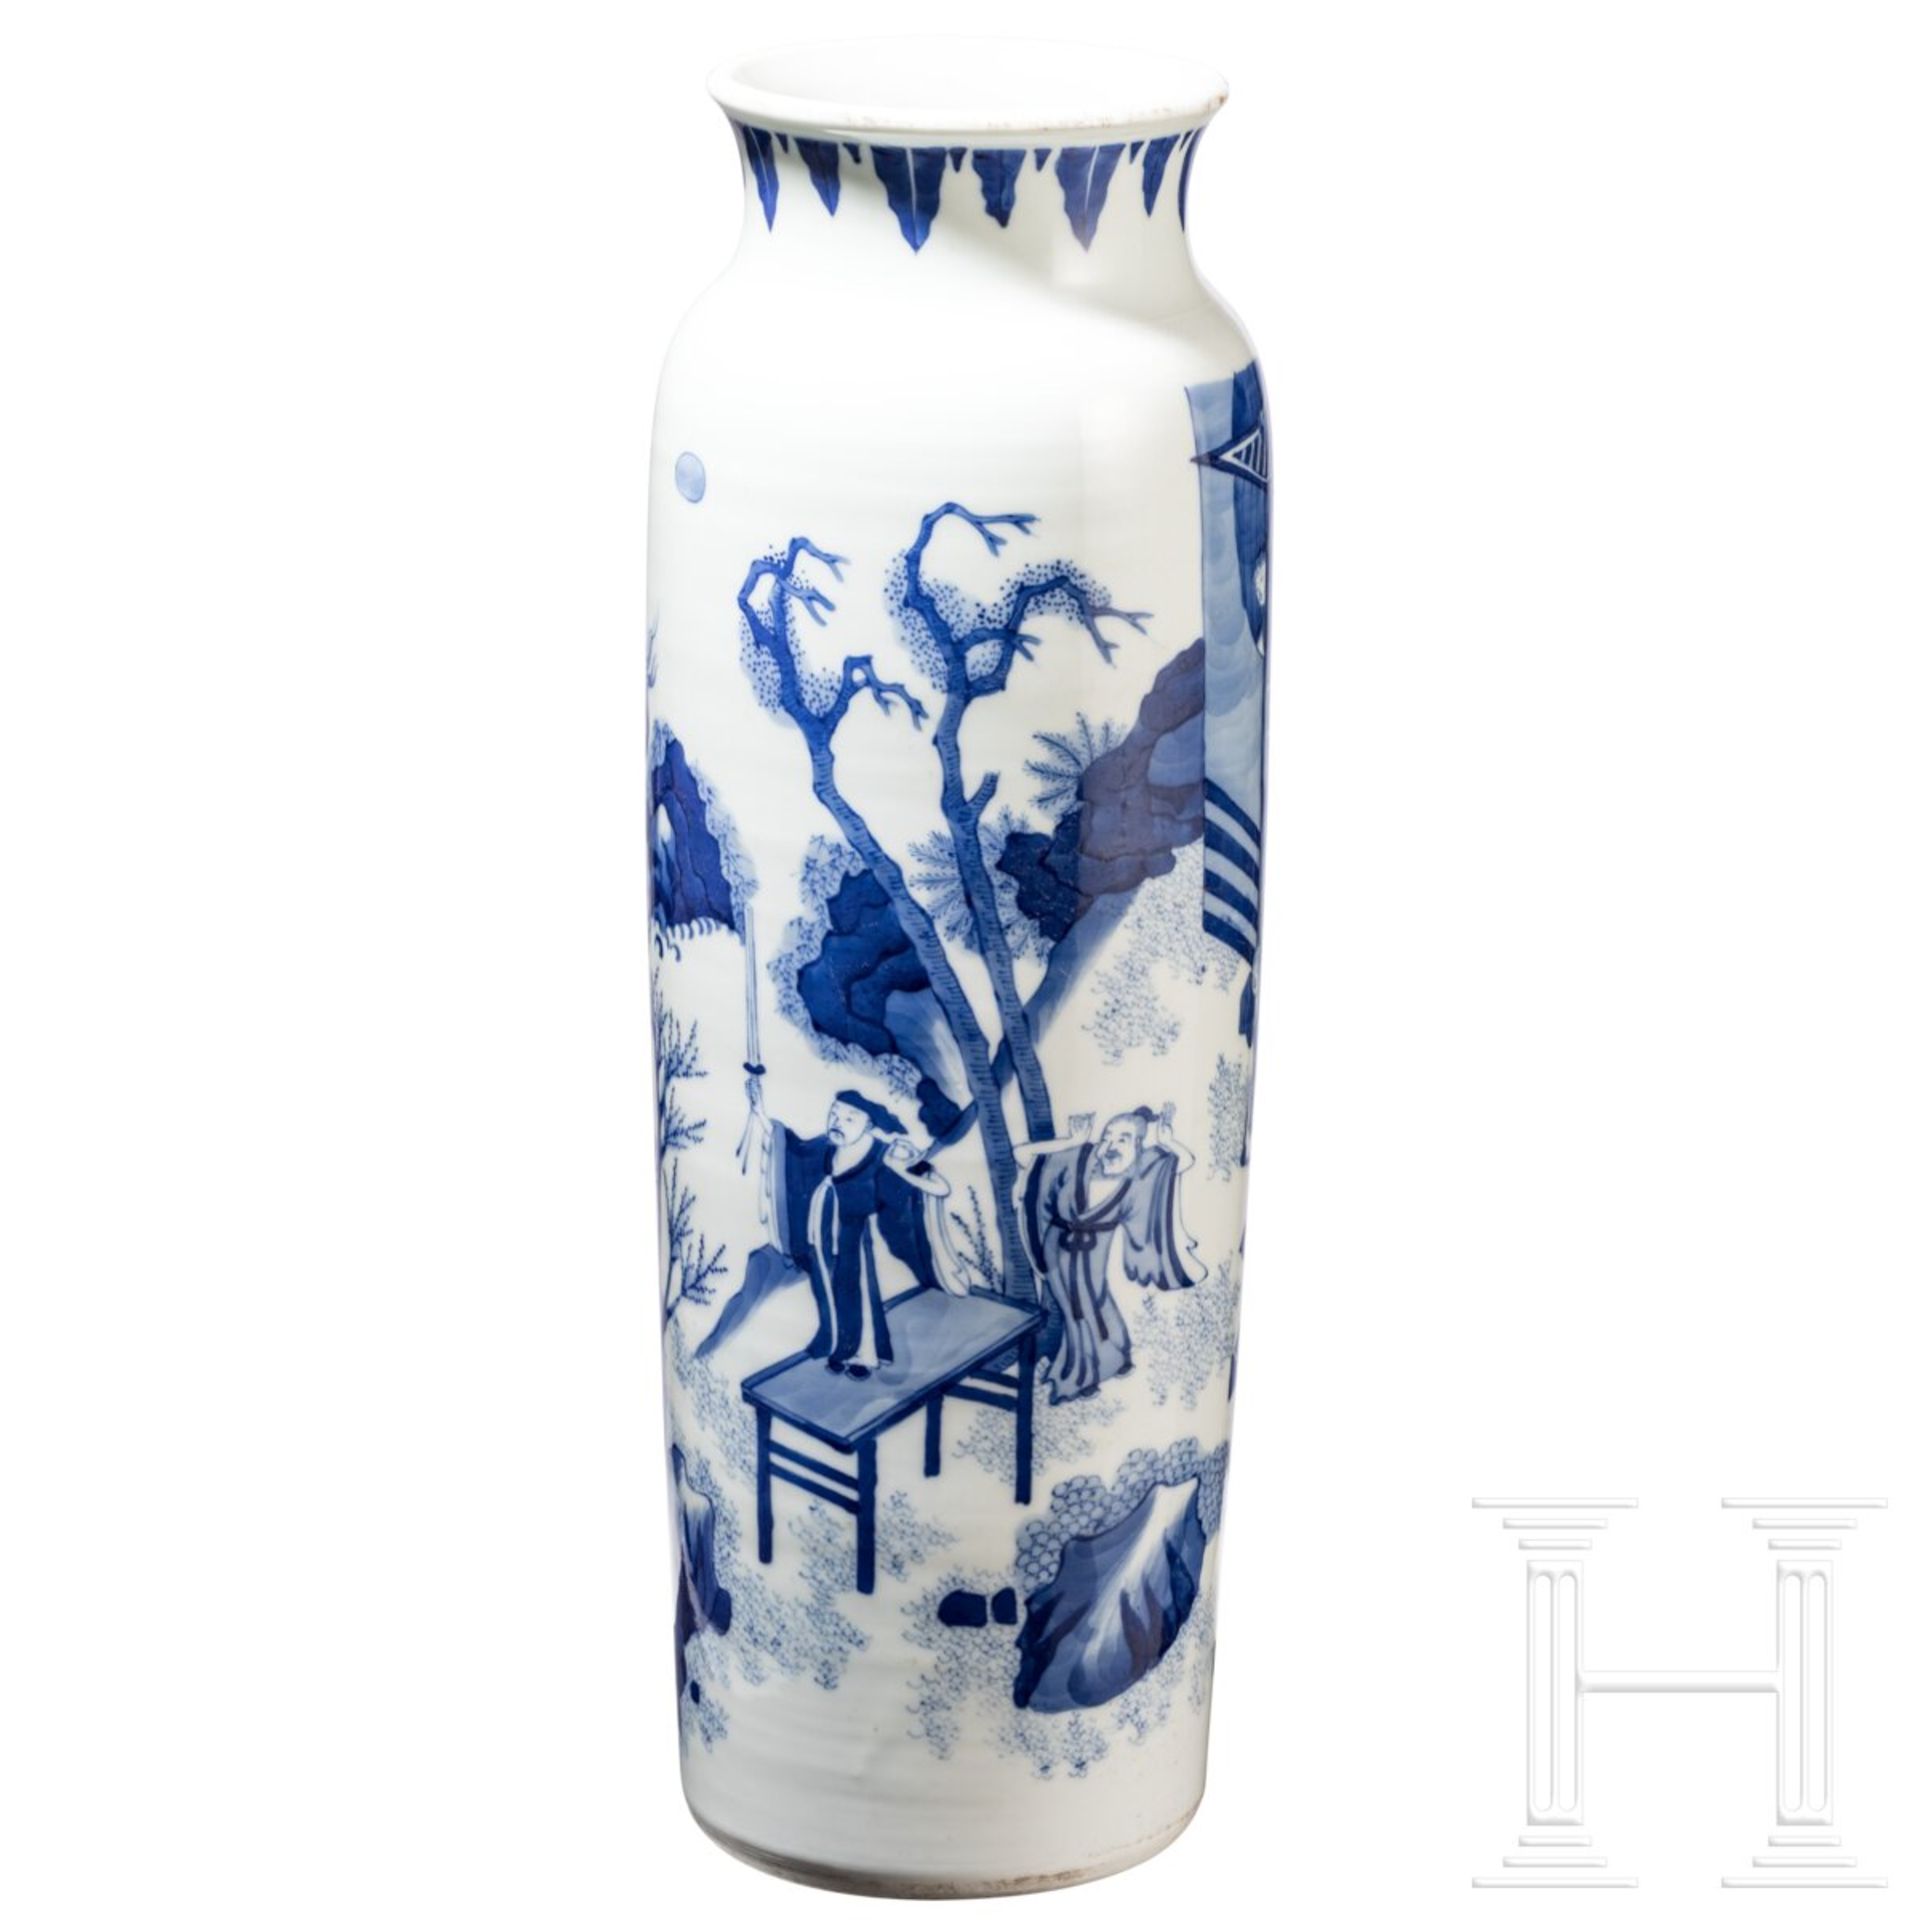 Große blaue-weiße Vase mit Soldatenszene, China, wohl Kangxi-Periode (18. Jhdt.) - Bild 2 aus 20